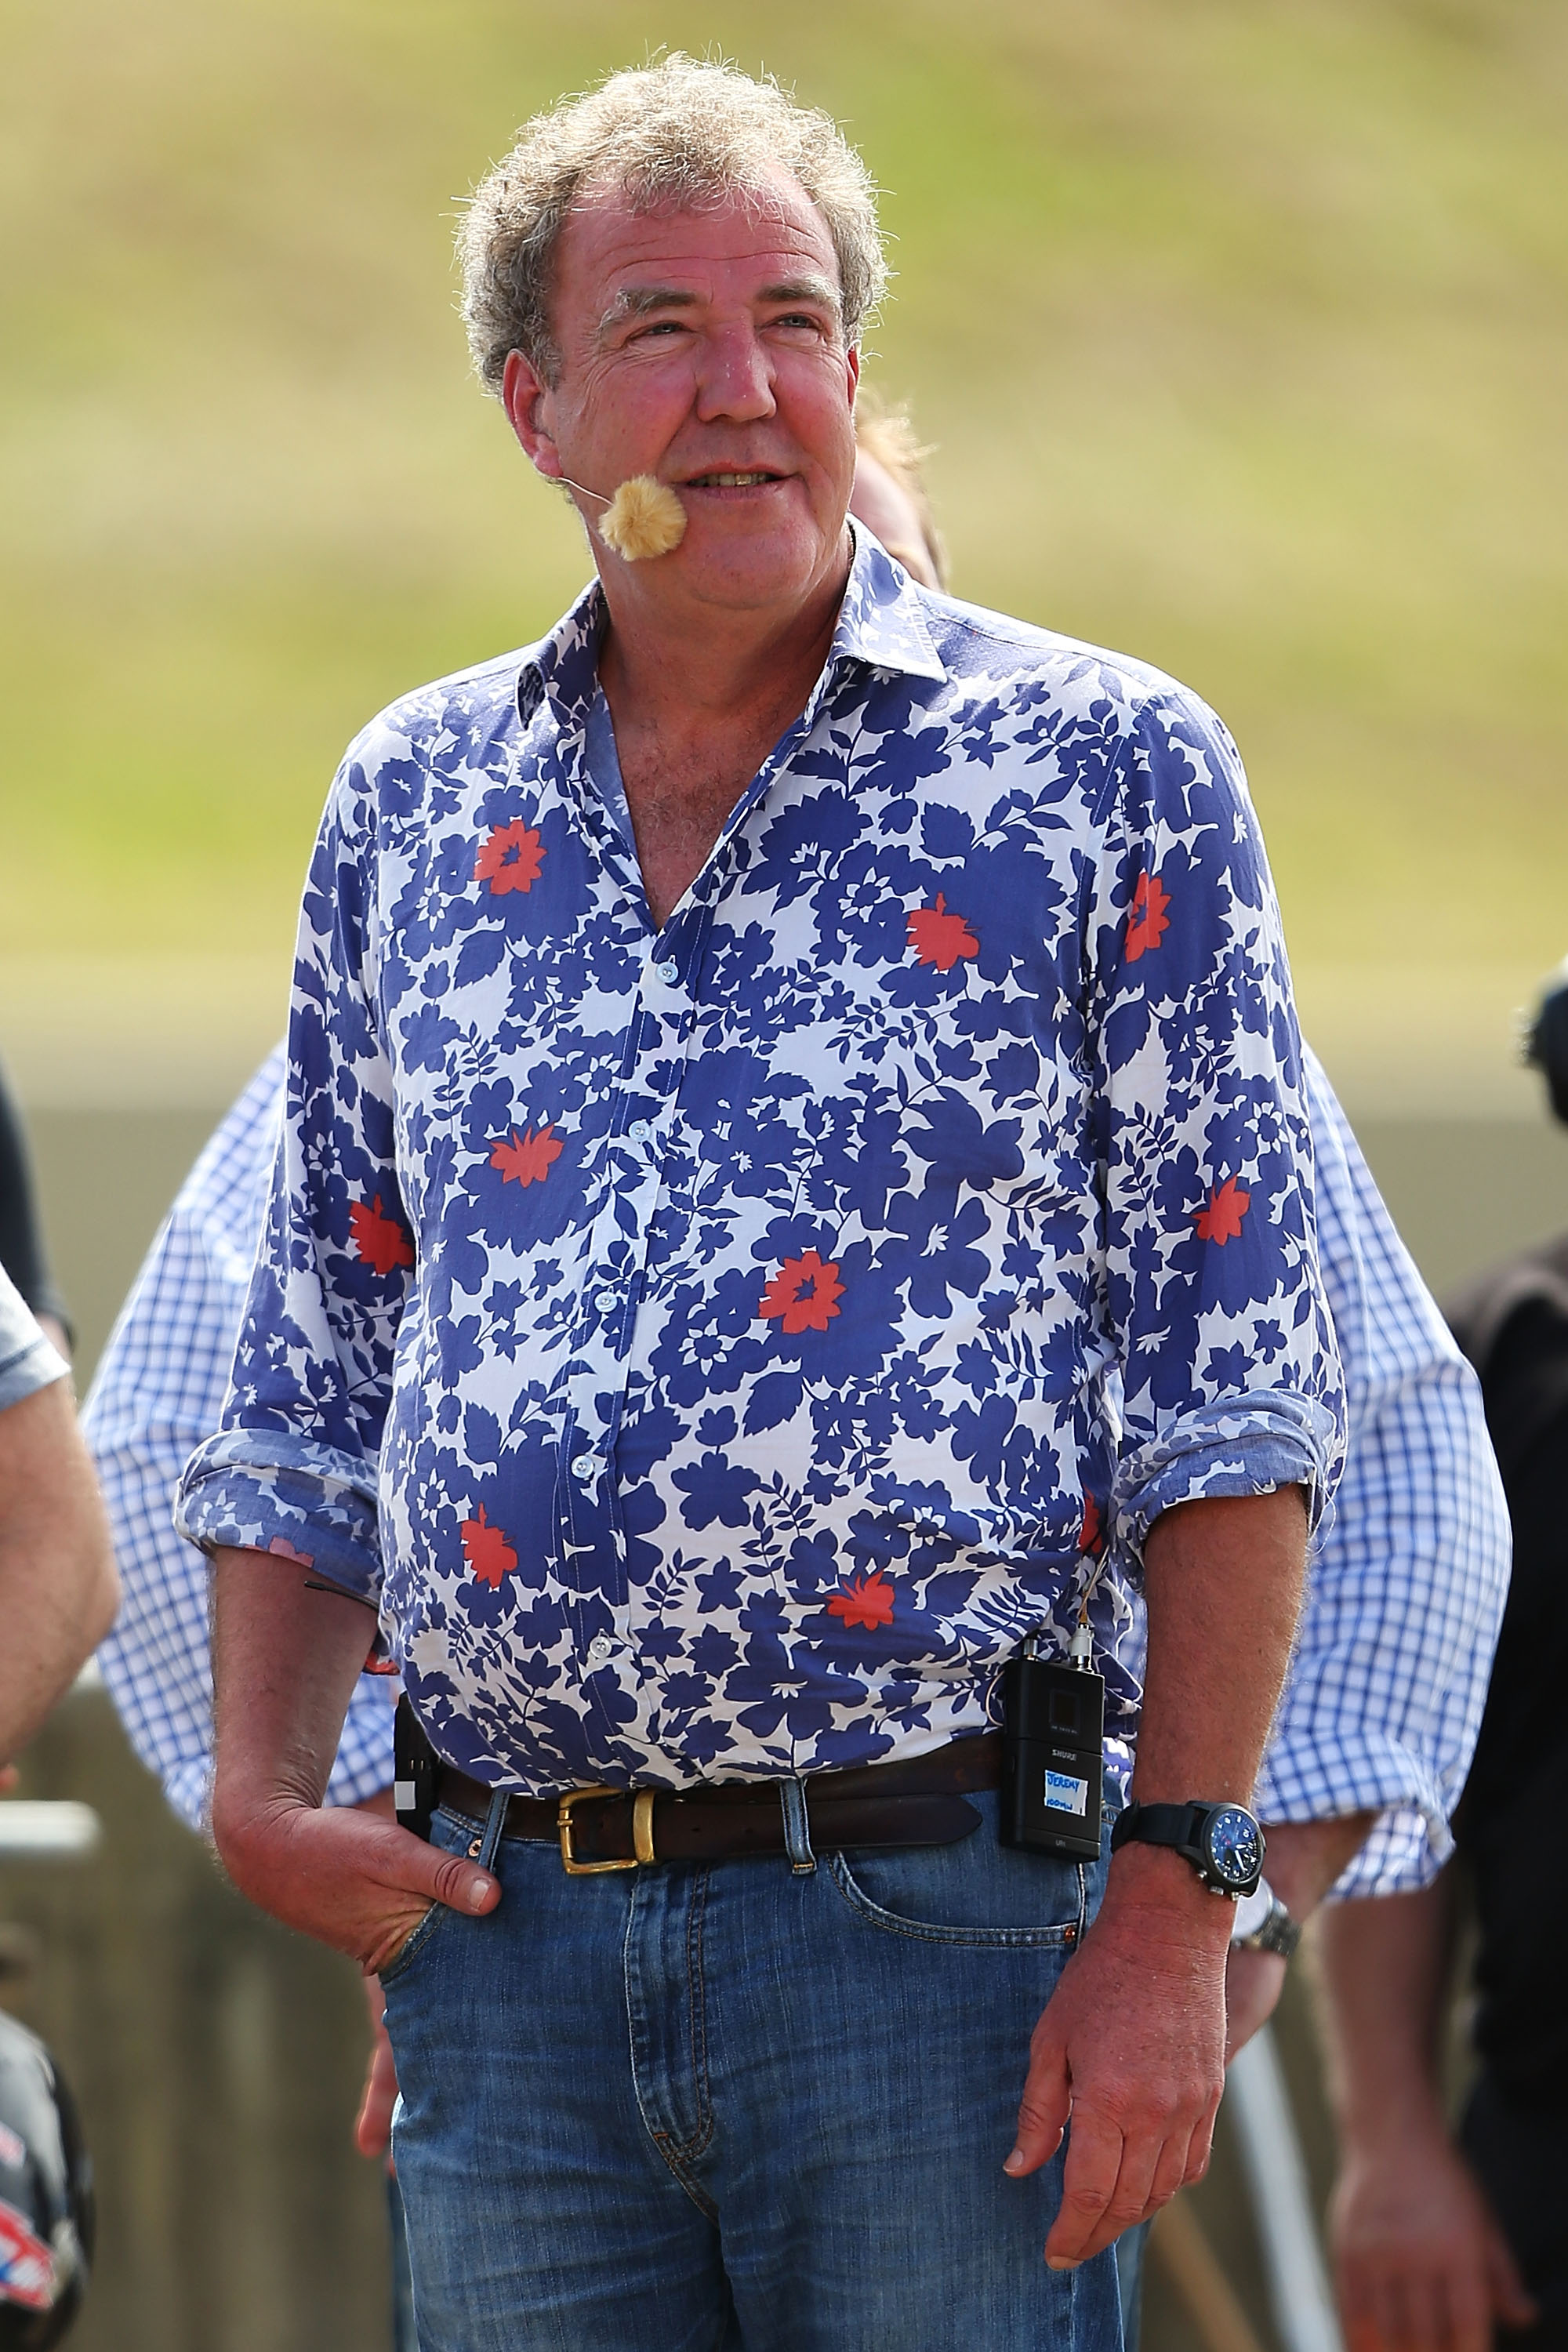 Jeremy Clarkson durante el Festival "Top Gear' el 9 de marzo de 2013 en Sidney, Australia | Fuente: Getty Images